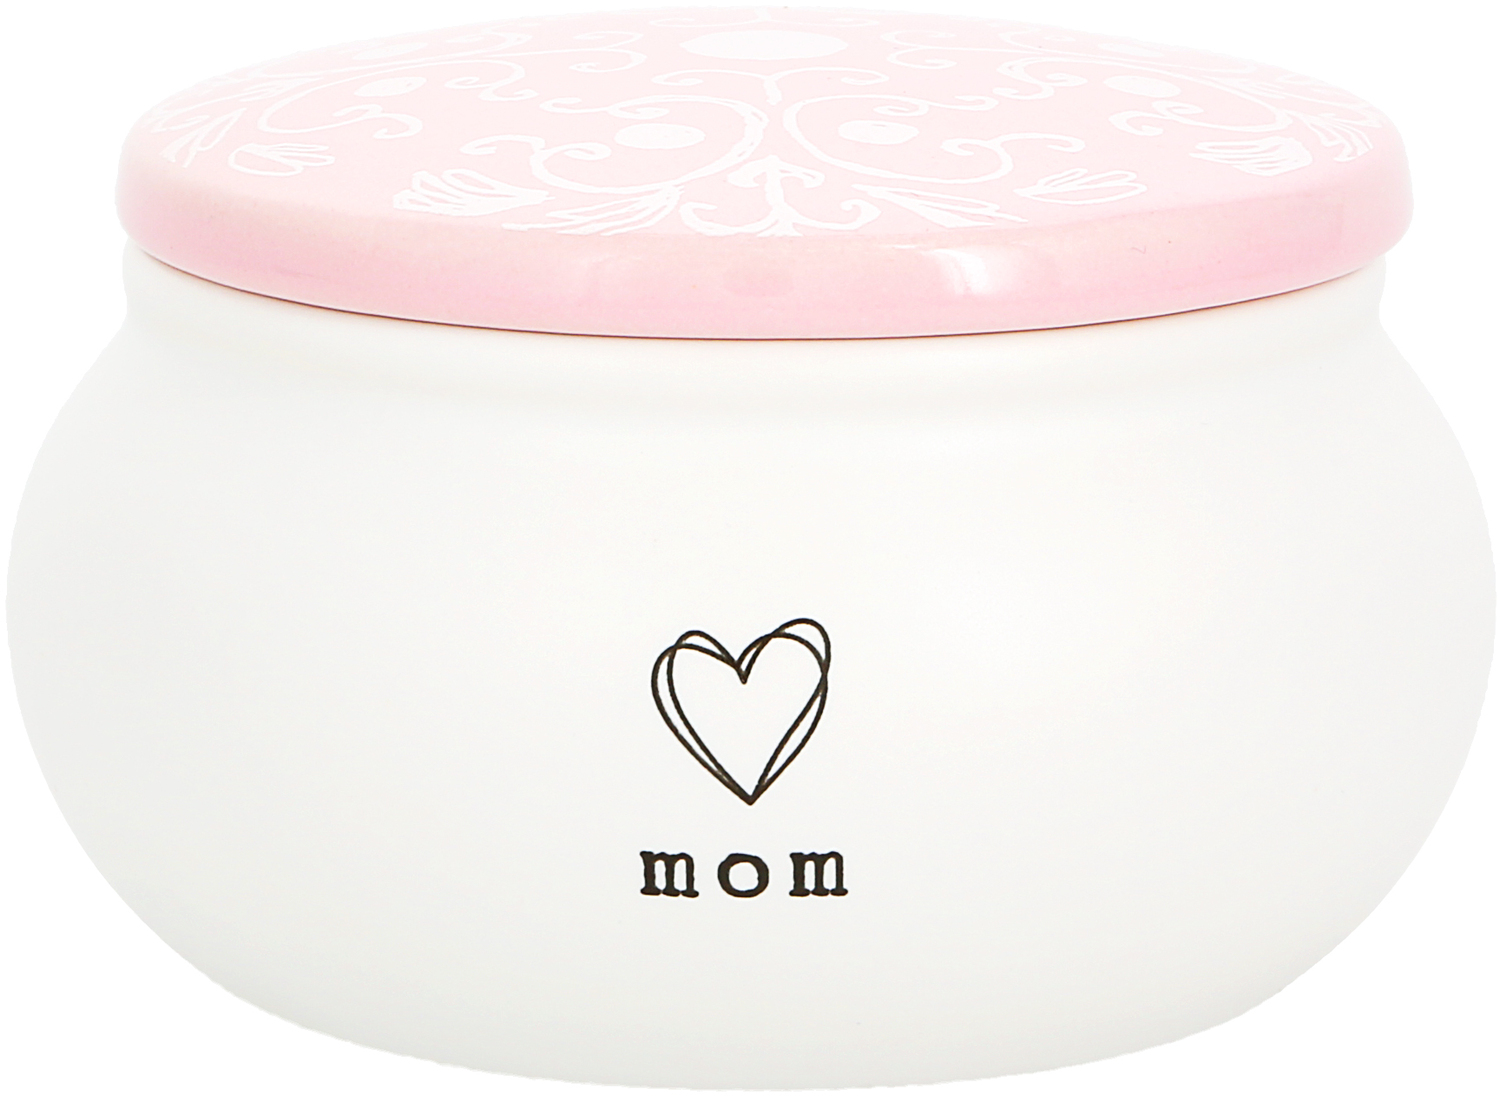 Mom by You Make Me Smile -ALW - Mom - 3.5" Ceramic Keepsake Box